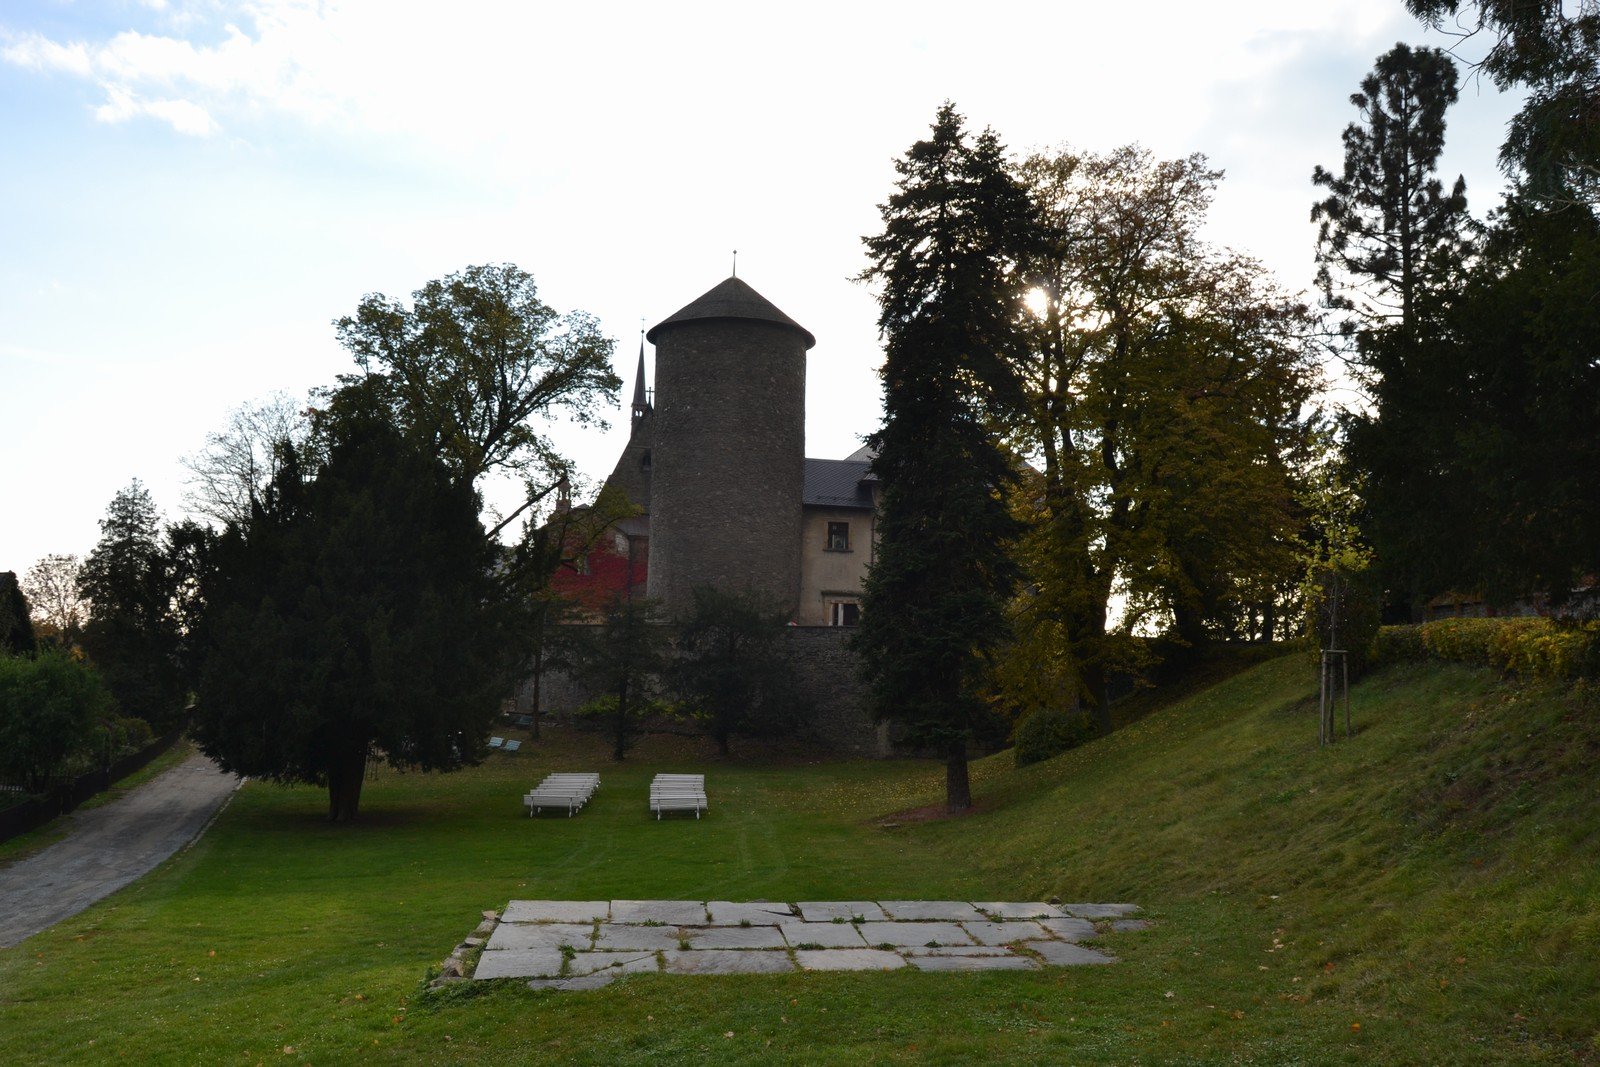 Castillo de Šternberk